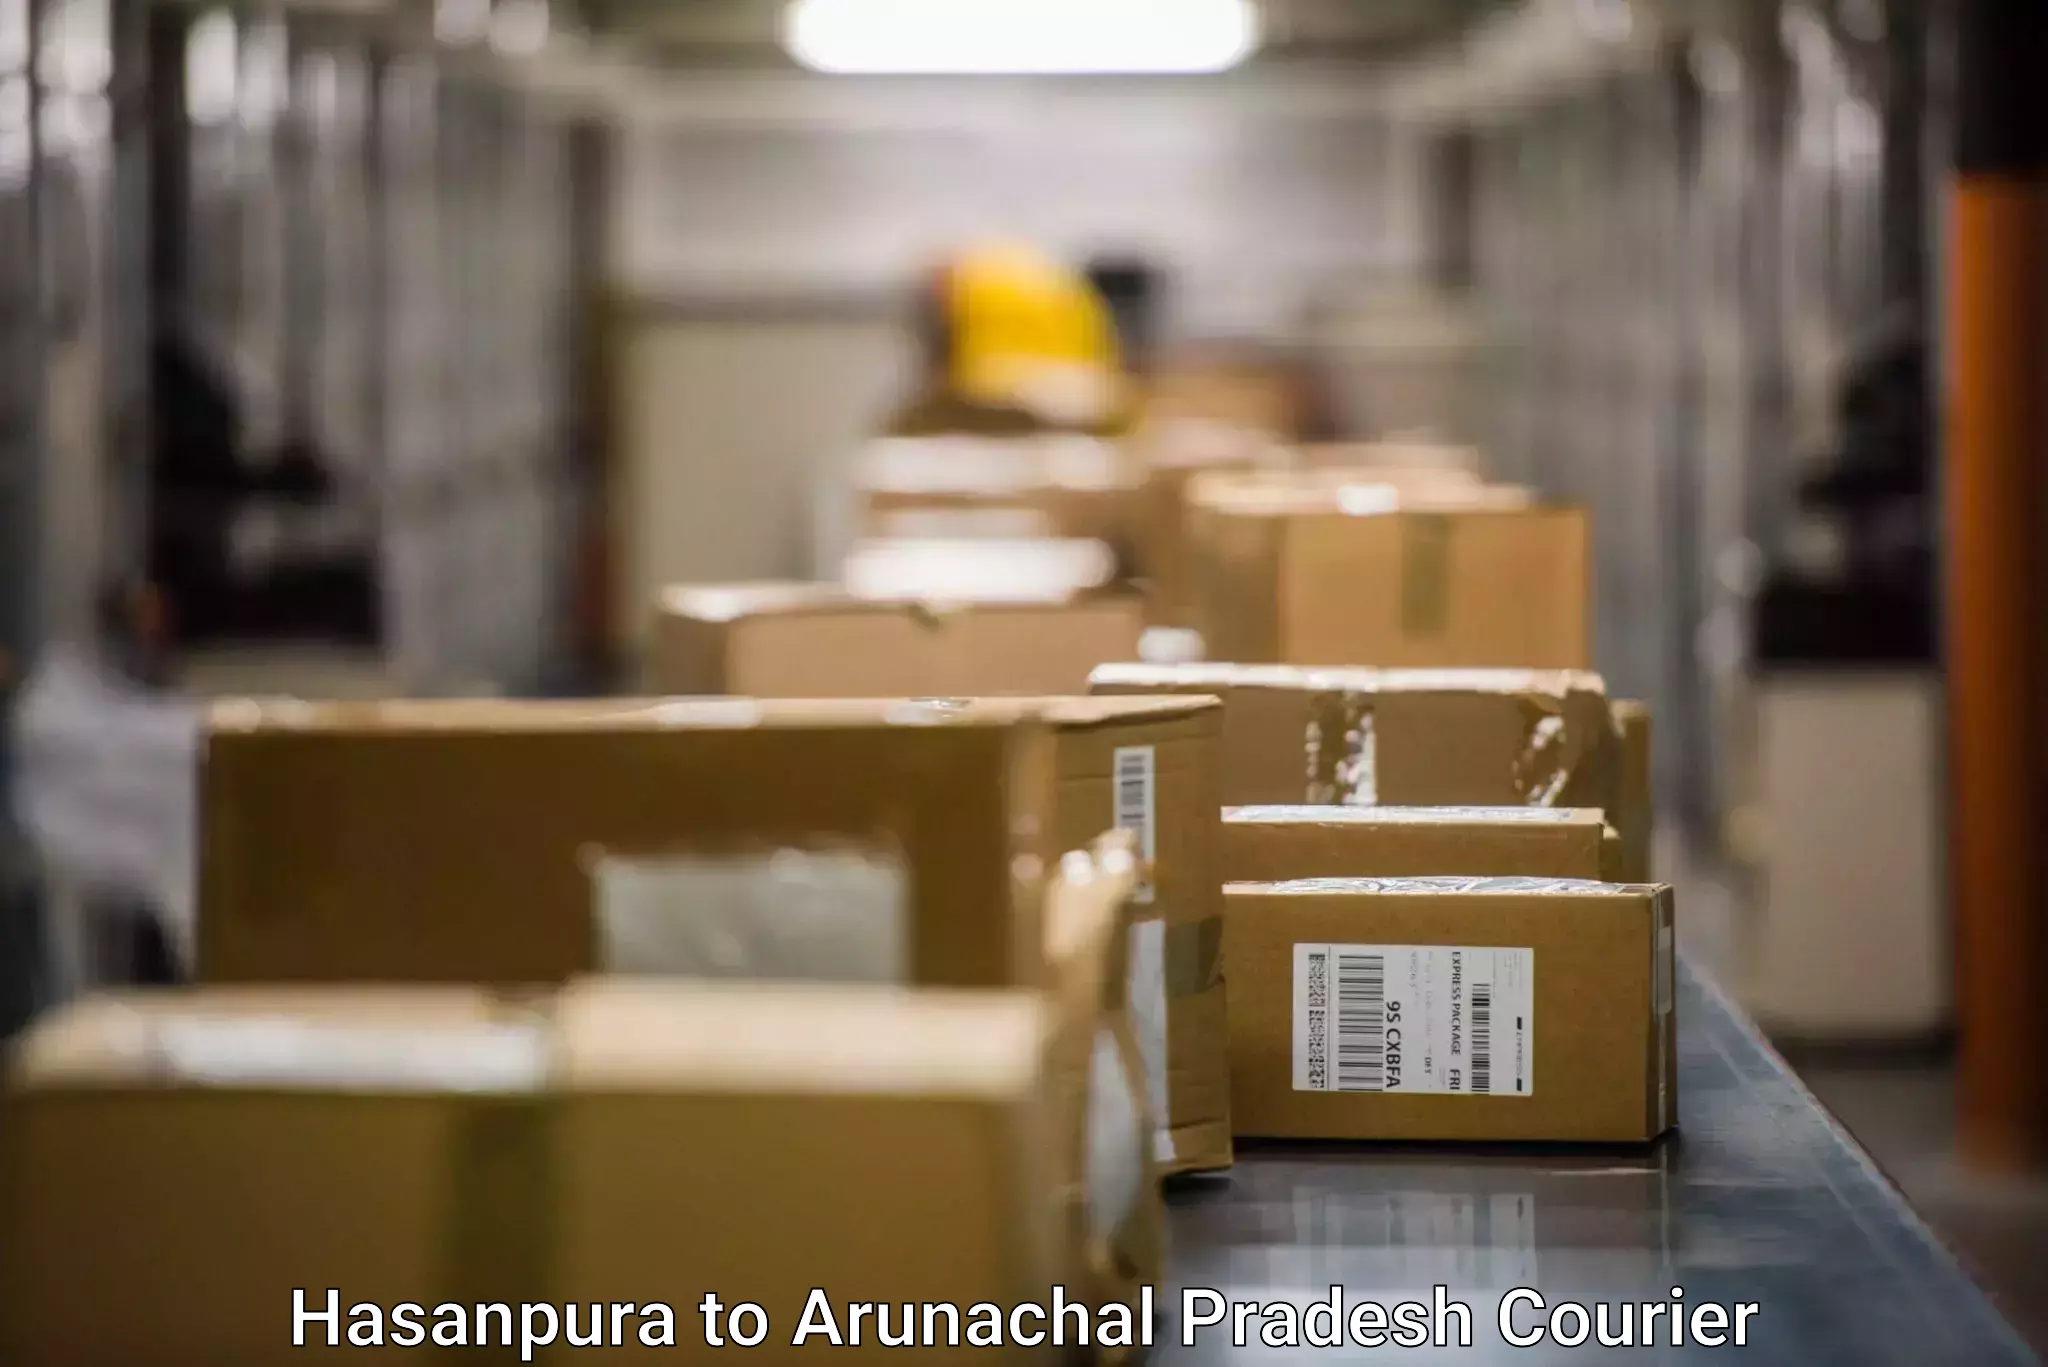 Efficient parcel service Hasanpura to Arunachal Pradesh